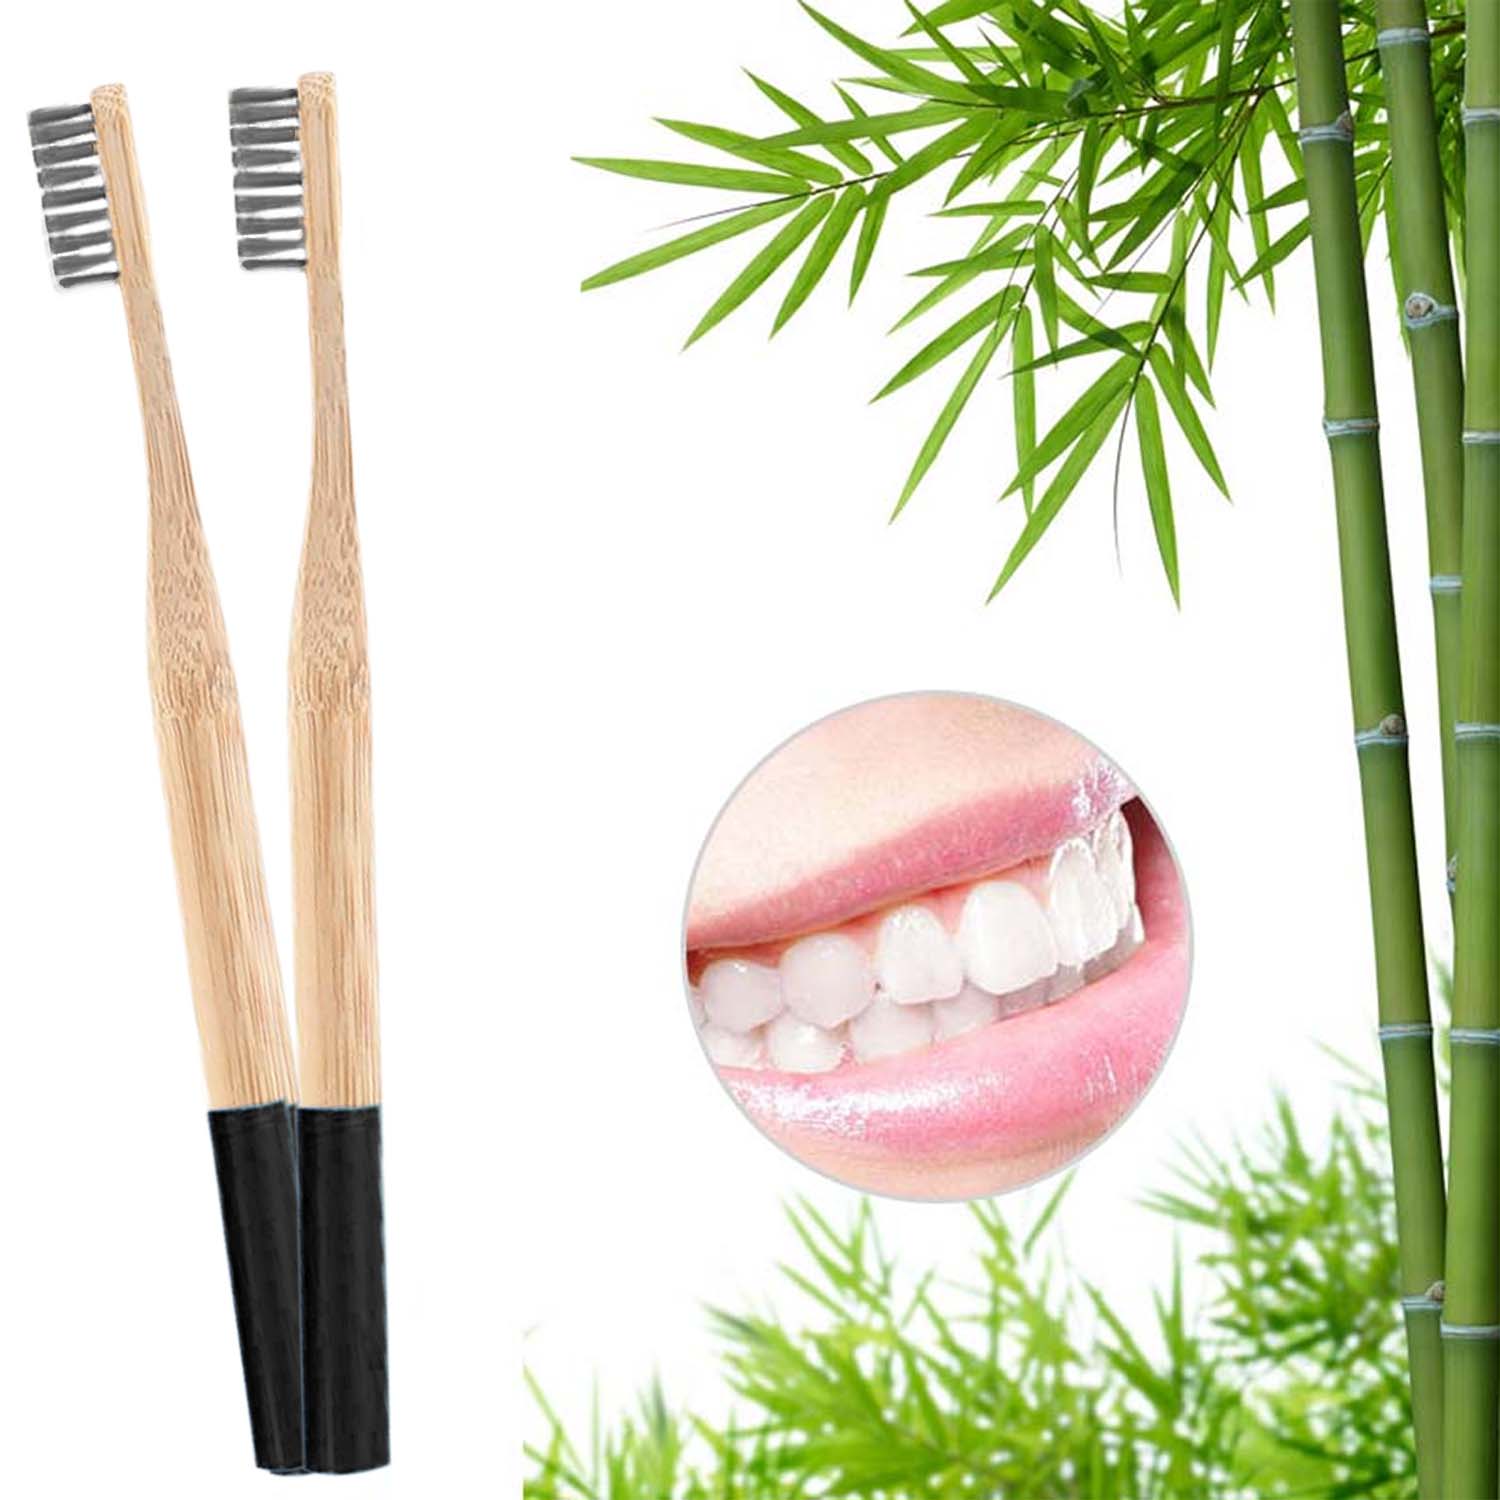 4er Set - Bambus Zahnbürsten - weiße Borsten